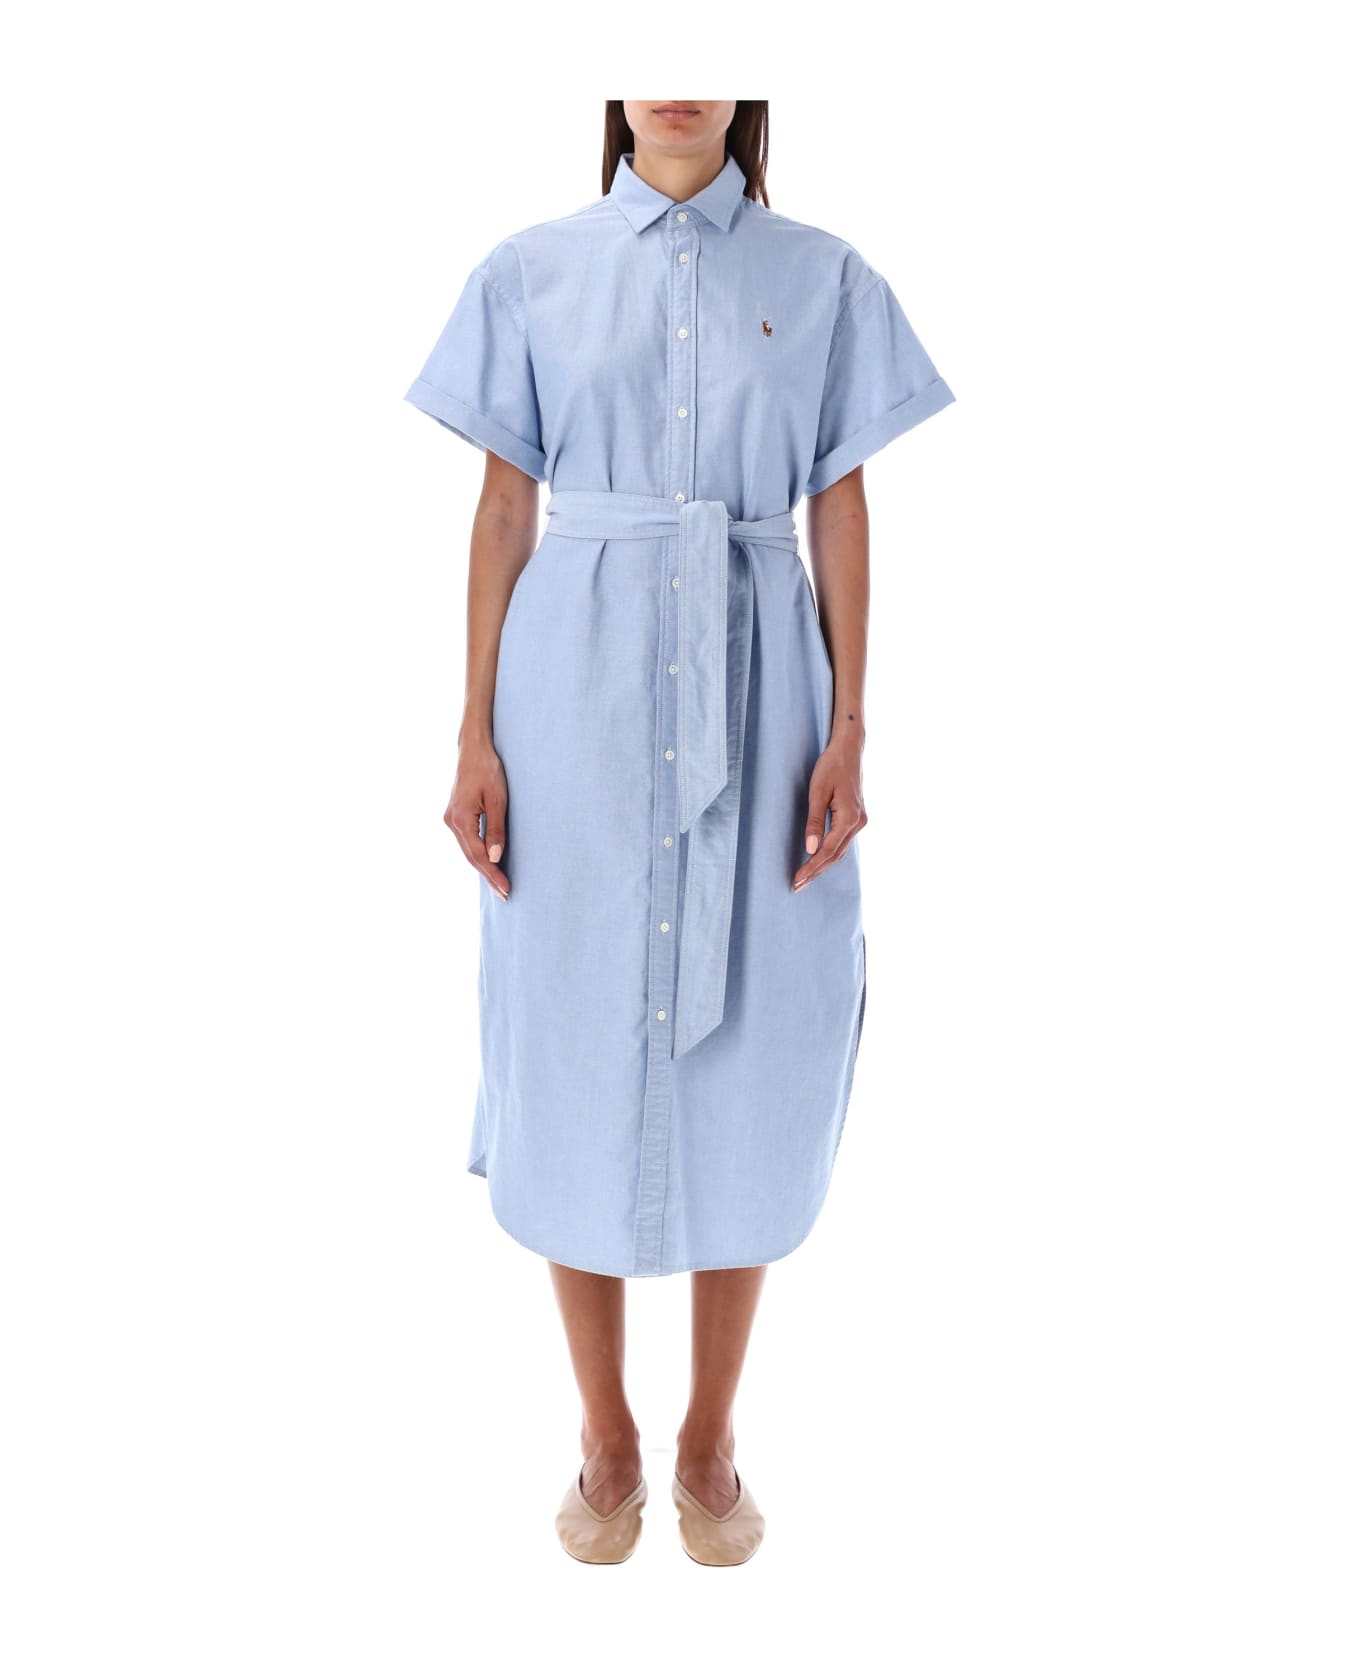 Polo Ralph Lauren Belted Oxford Shirtdress - BSR BLUE LIGHT